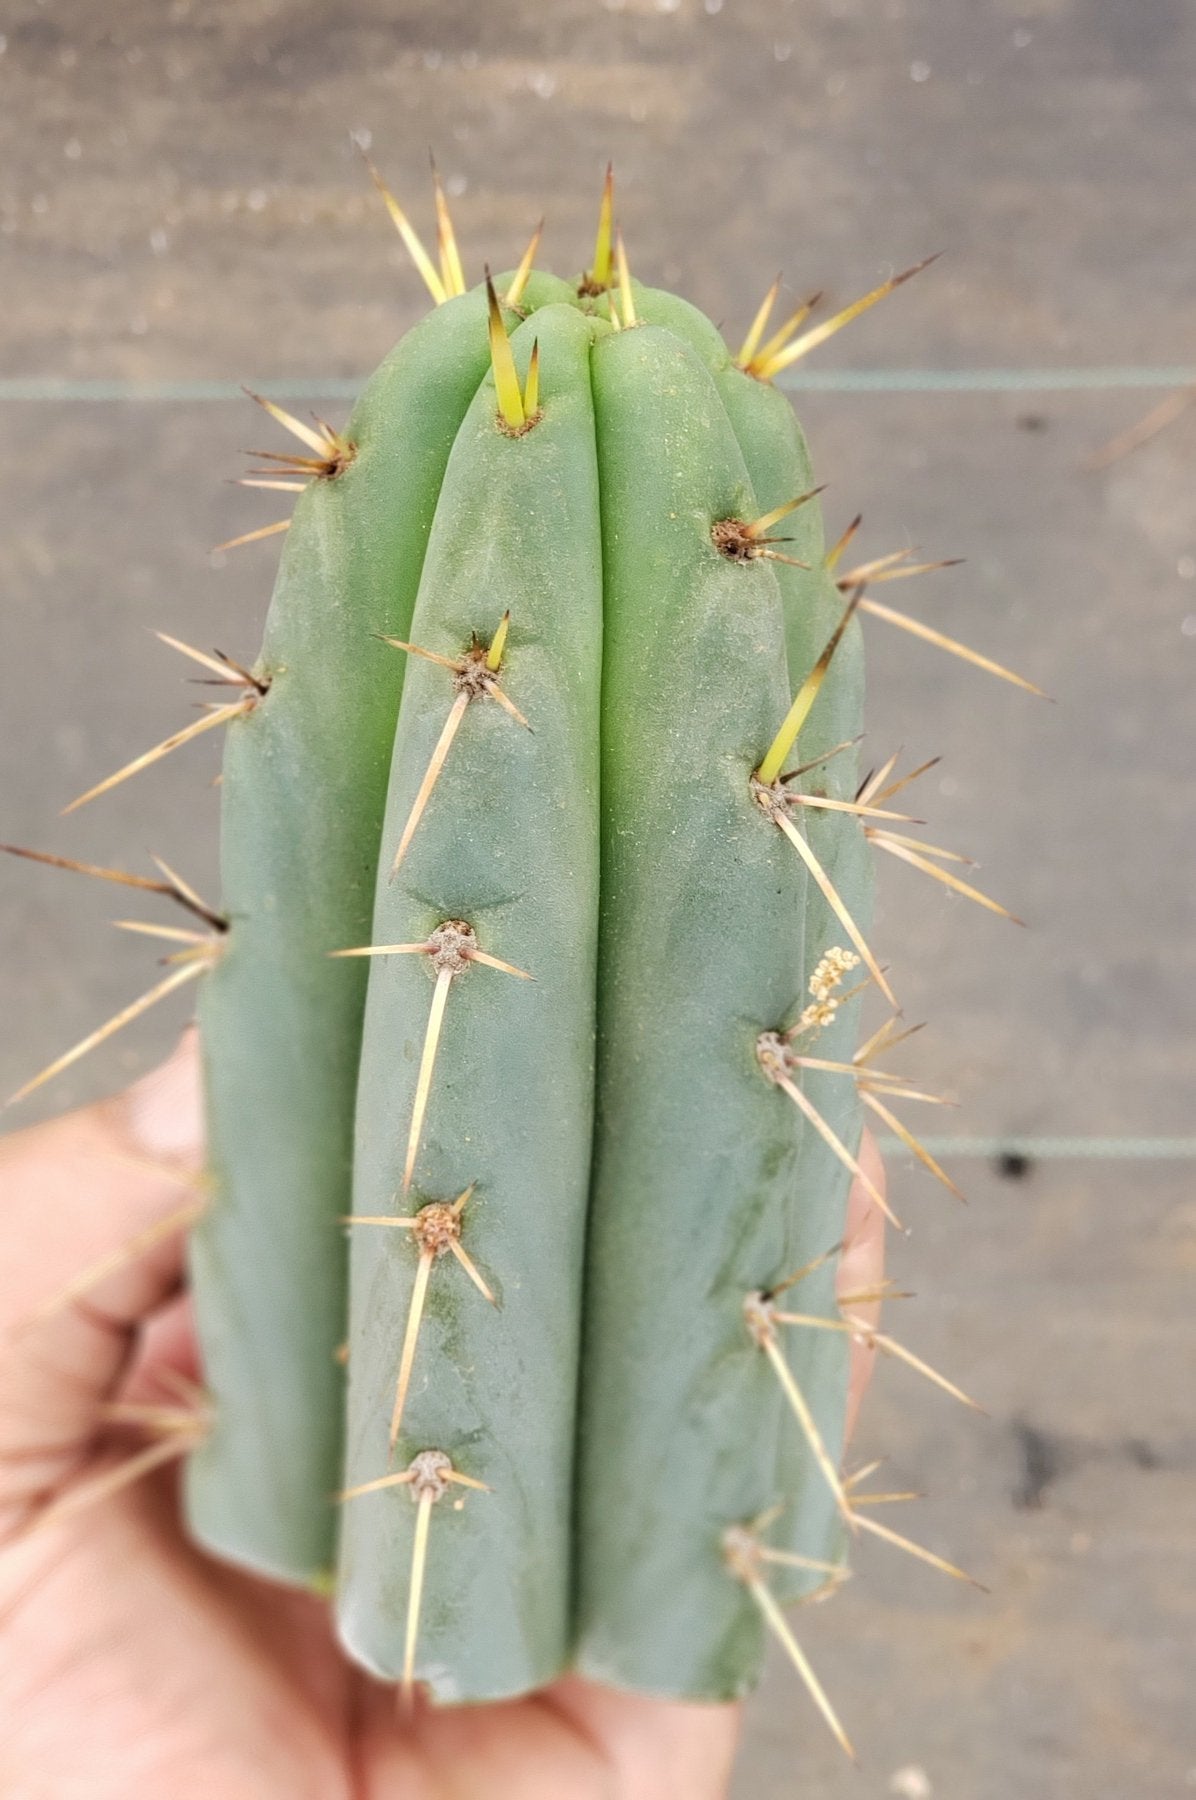 #EC107 EXACT Trichocereus Bridgesoid cutting 5-6"-Cactus - Large - Exact-The Succulent Source